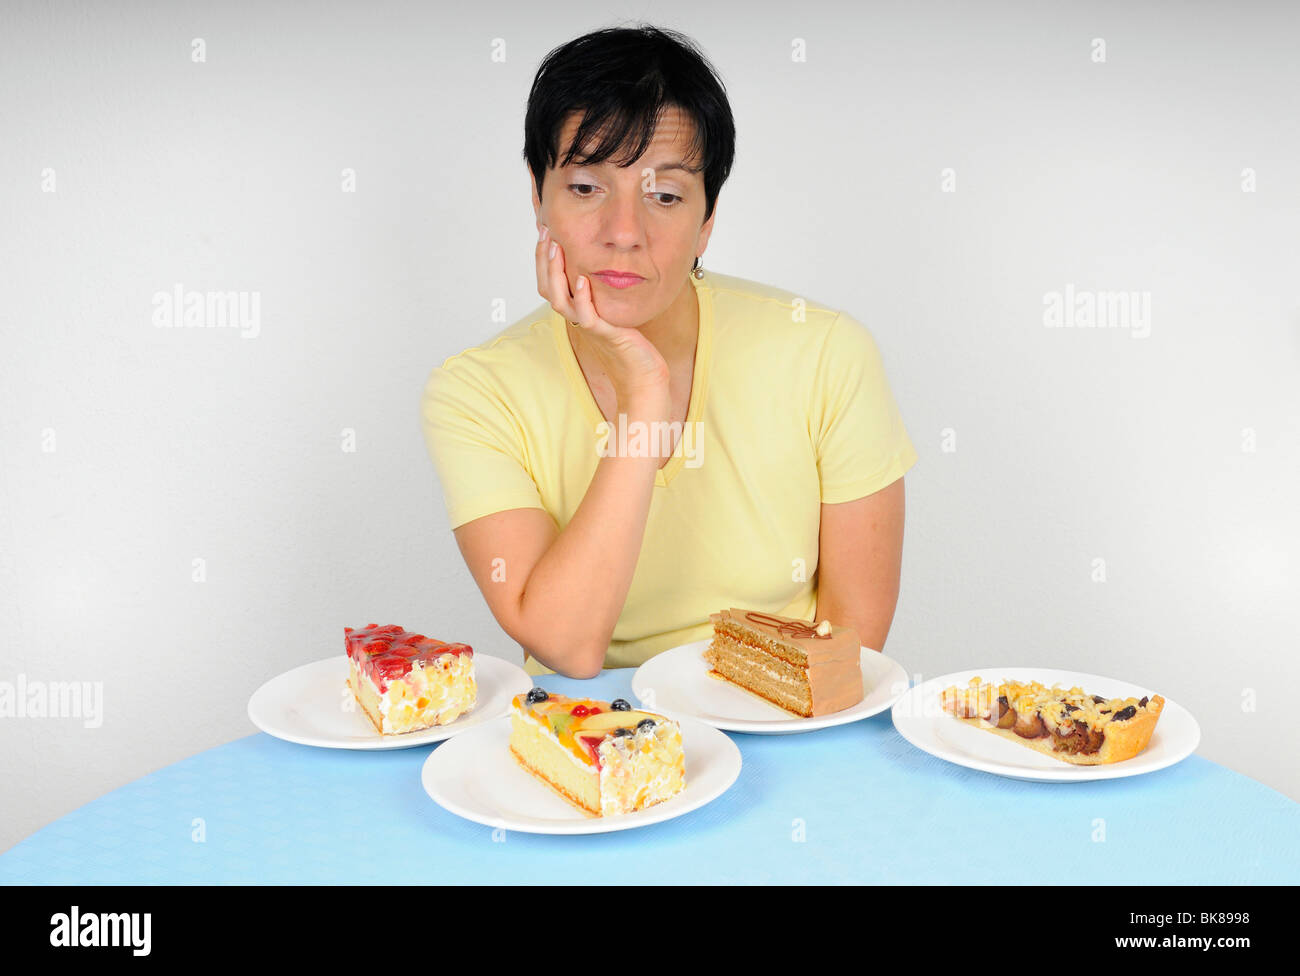 При климаксе полнеют. Потеря аппетита. Набор веса при климаксе. Ожирение при климаксе у женщин. Потеря аппетита причины у женщин.